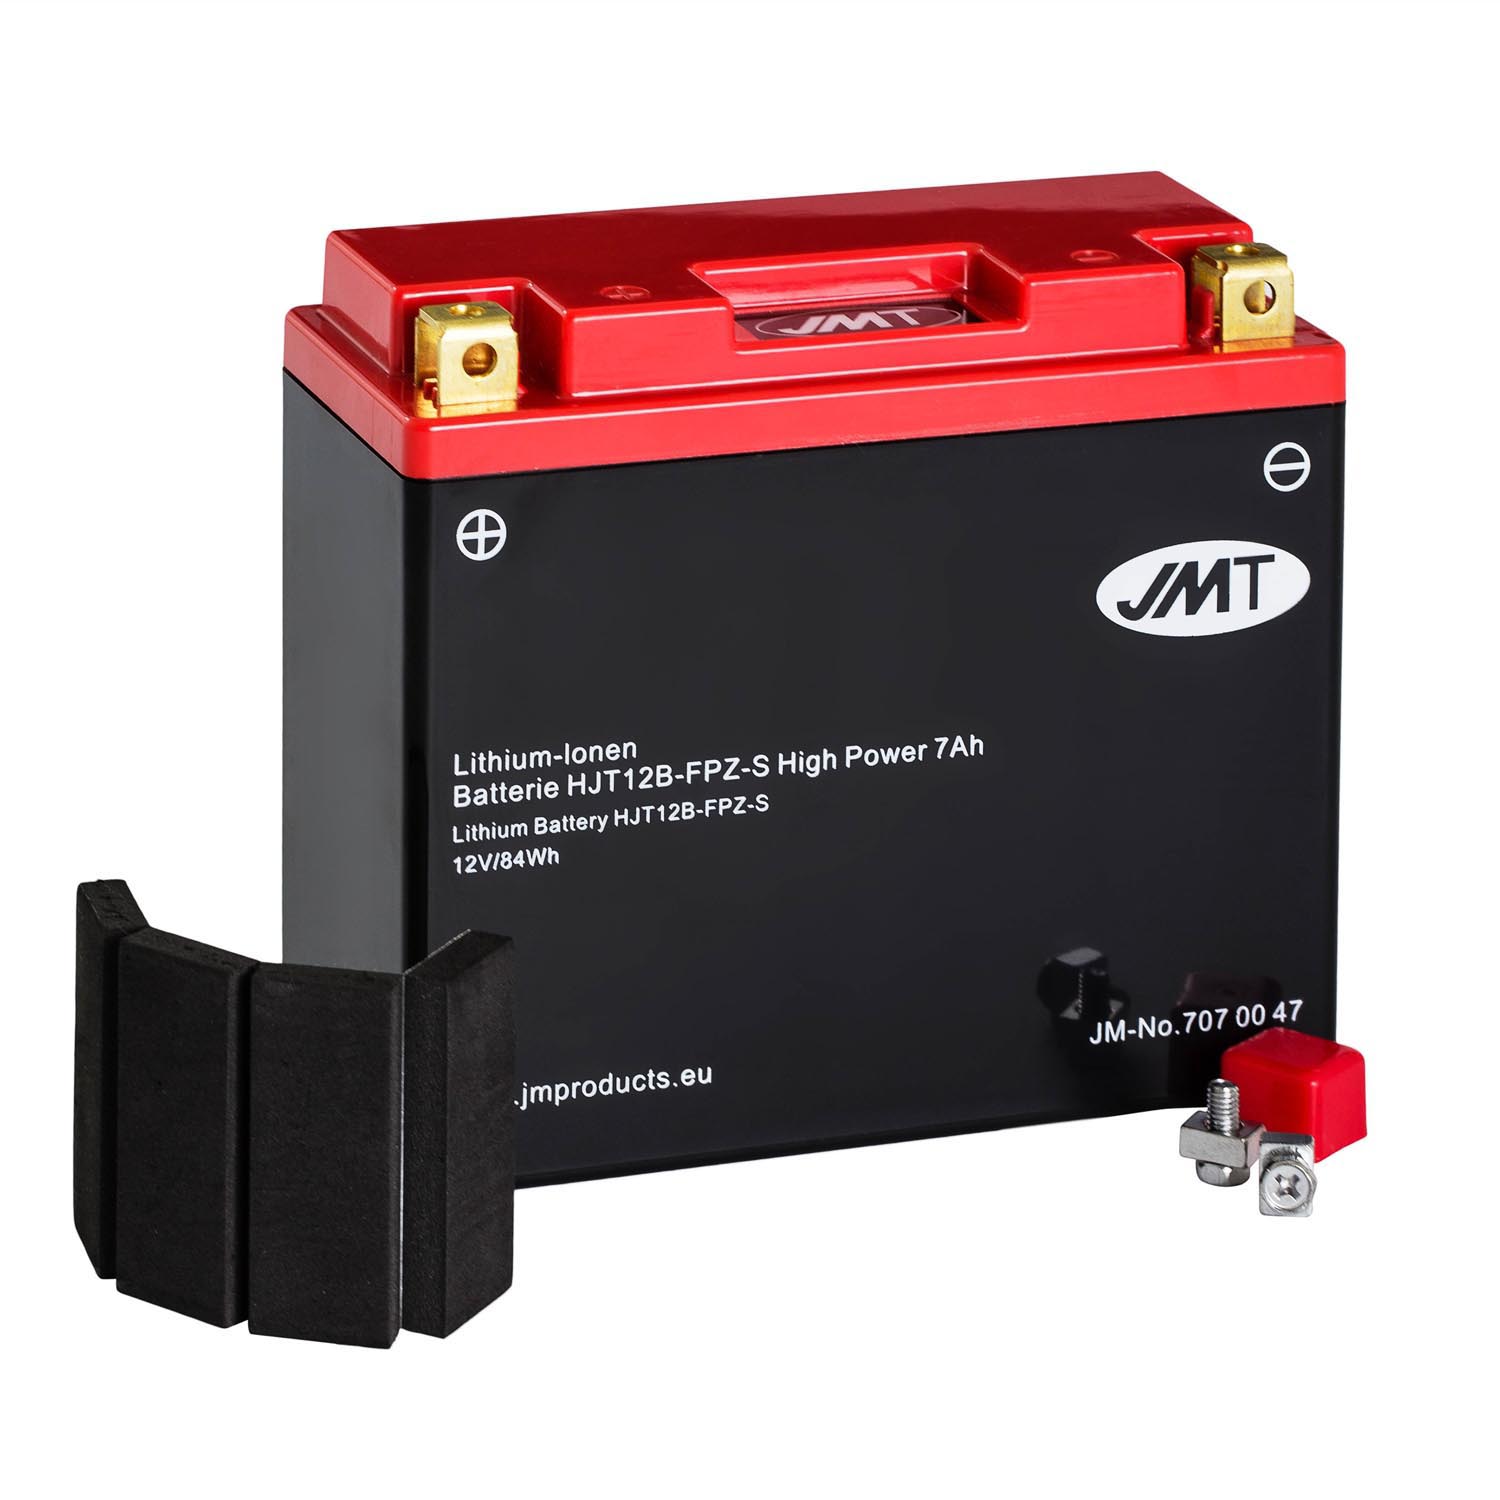 JMT Lithium-Ionen-Motorrad-Batterie HJT12B-FPZ-S 12V